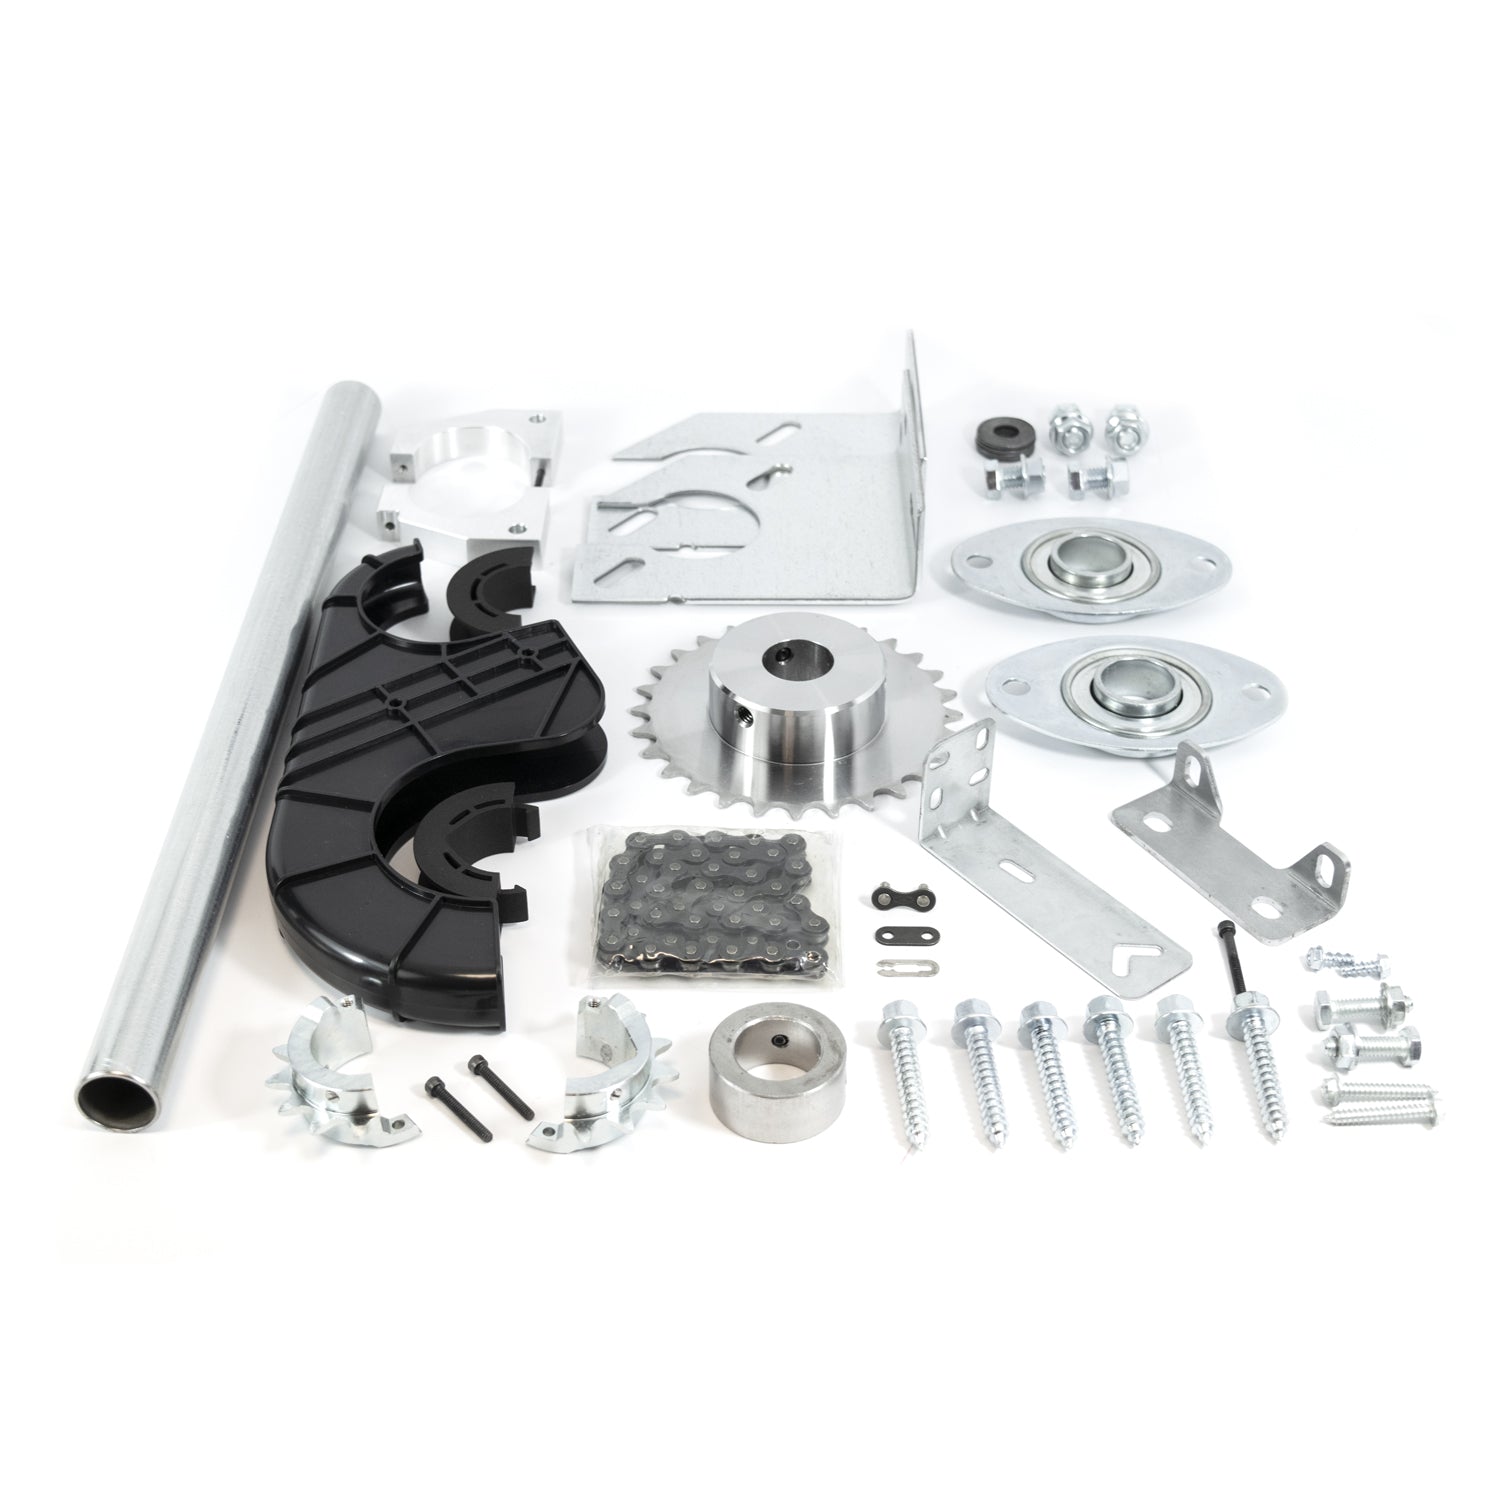 TorqueMaster Adapter Kit for Genie Wall Mount Garage Door Opener 41032R